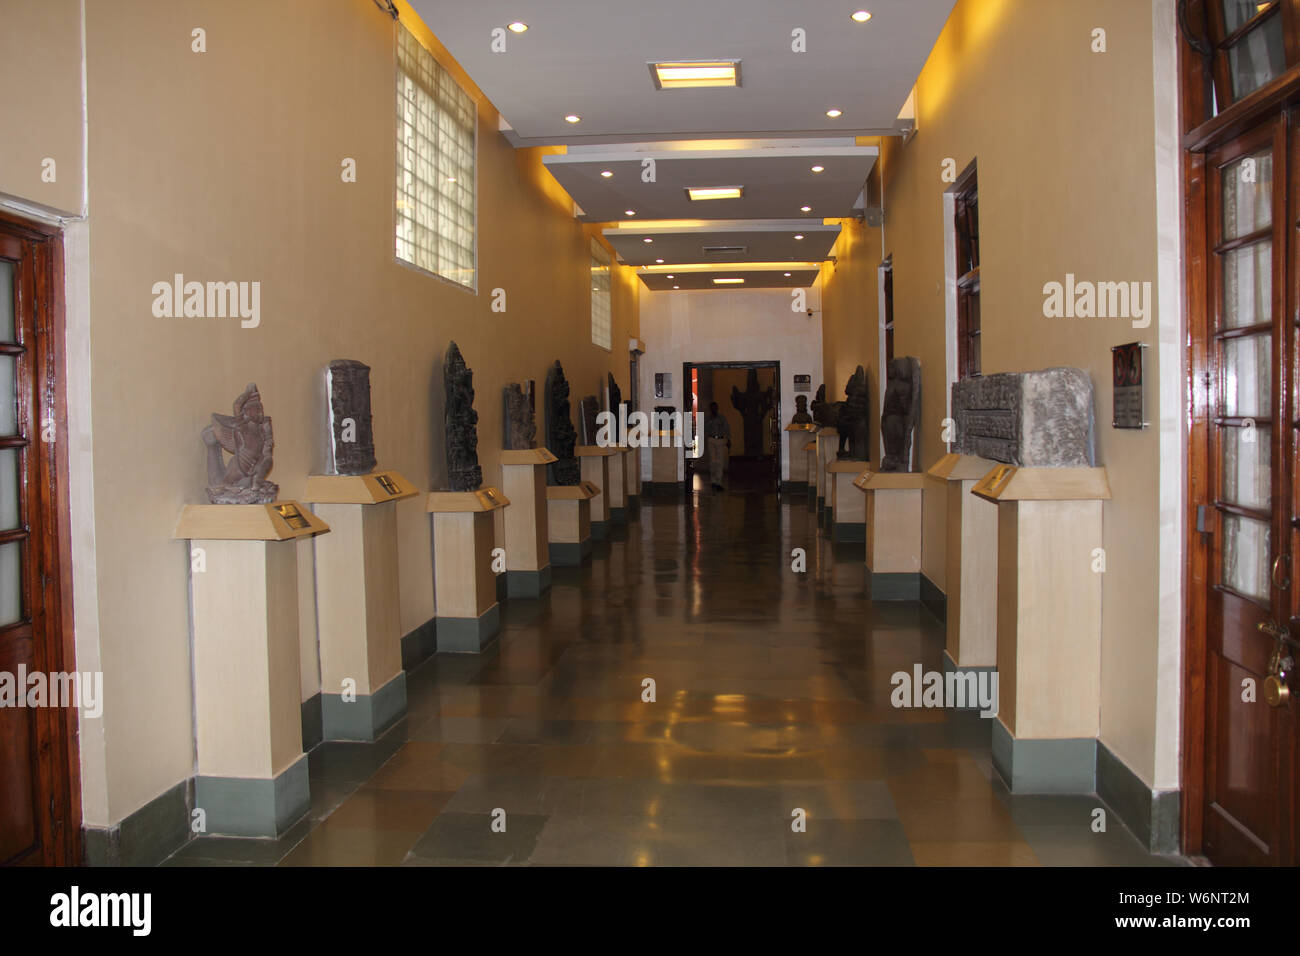 Intérieurs d'un musée d'art, Musée national, Janpath, New Delhi, Inde Banque D'Images